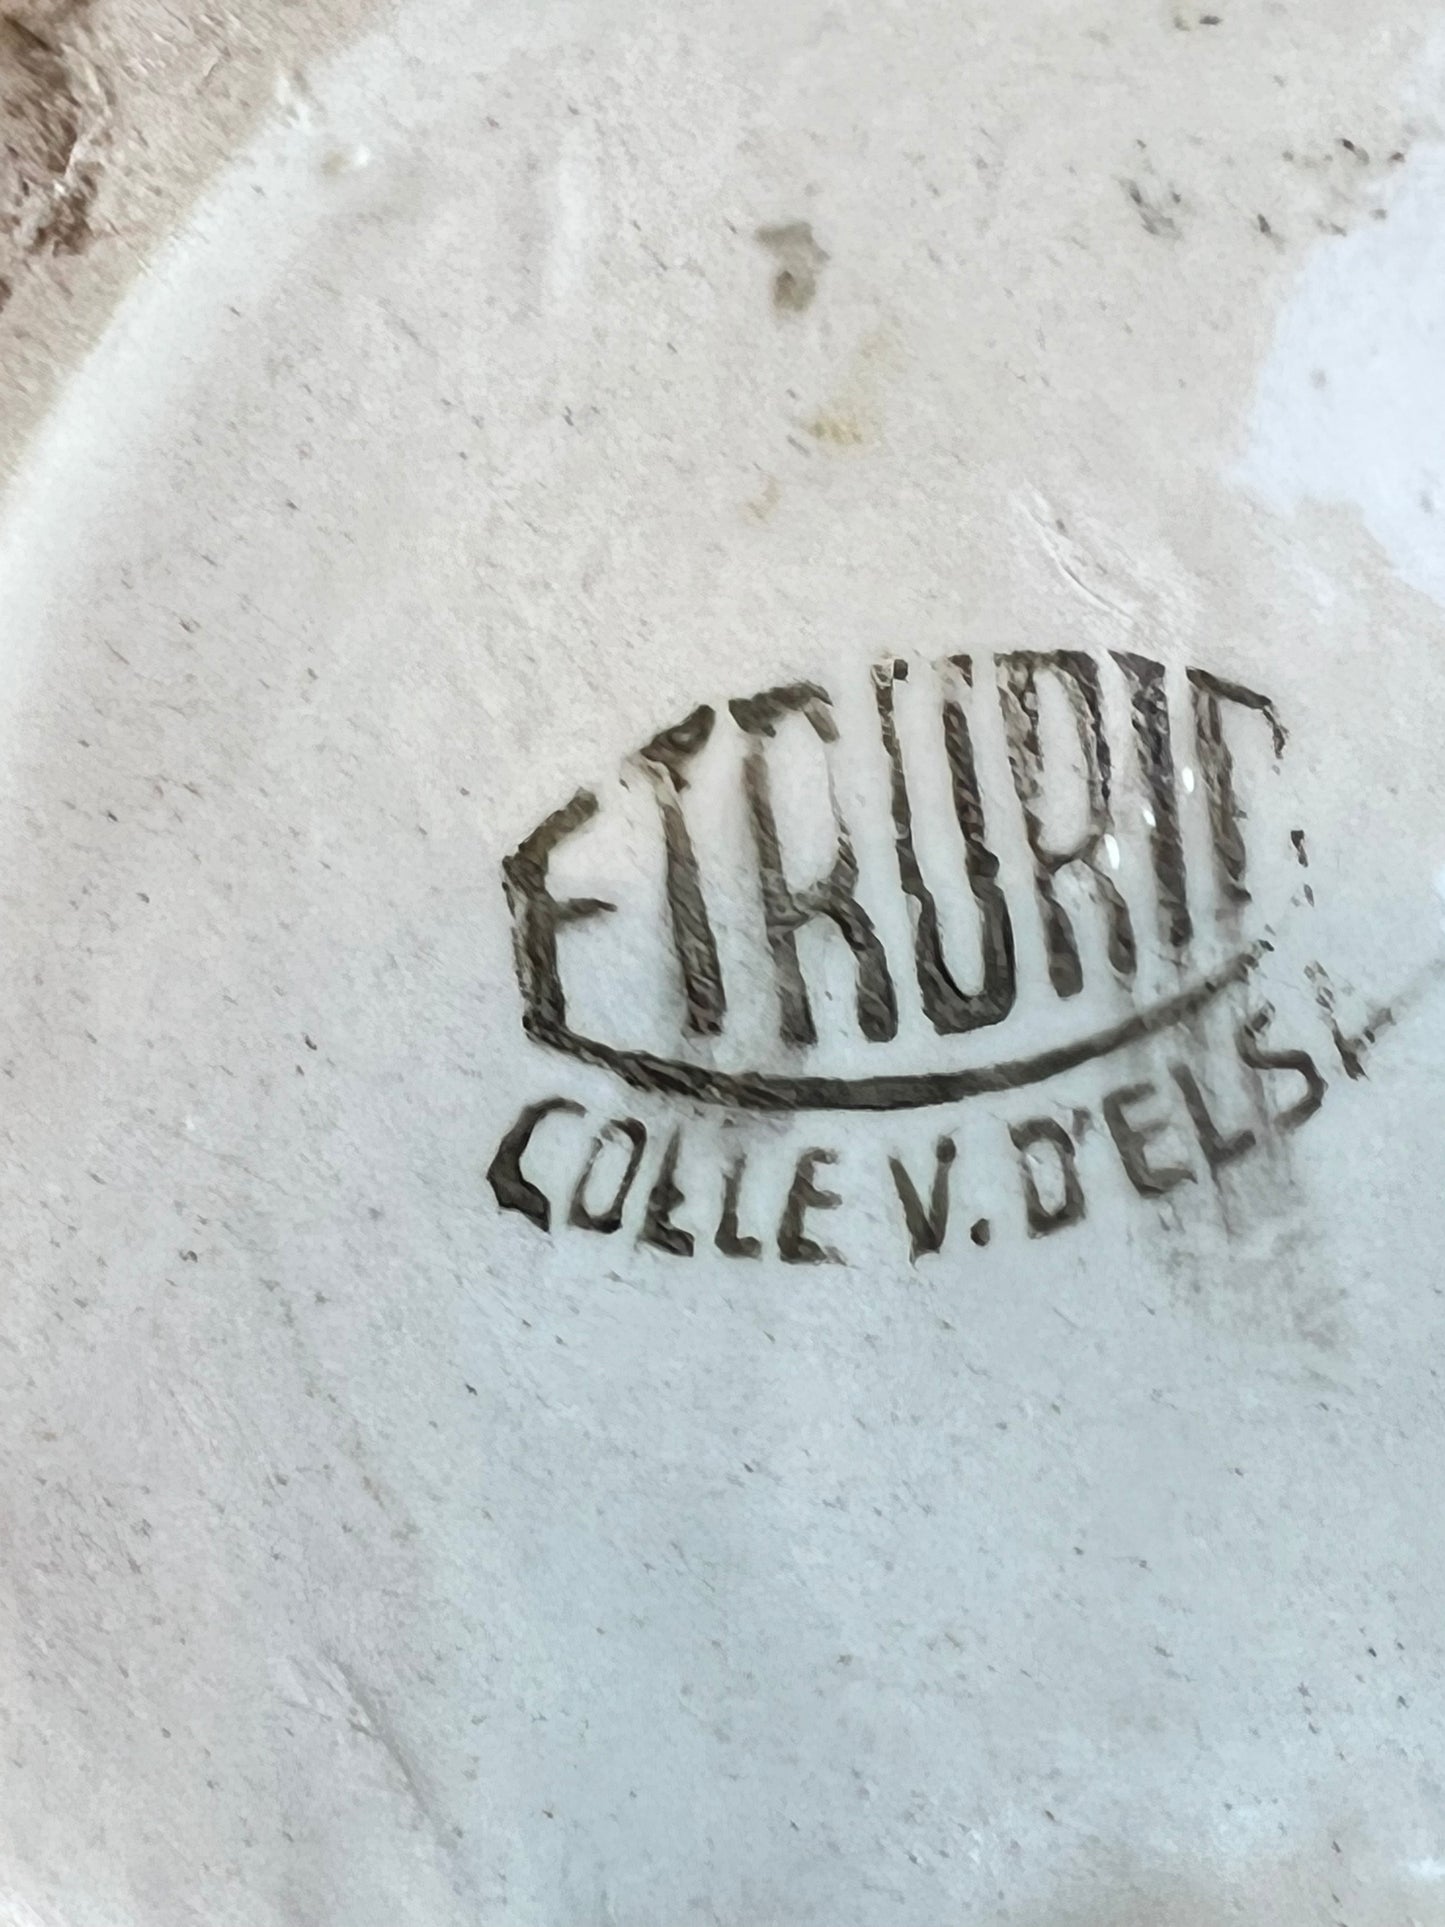 Etruria Colle Val d'Elsa Italian Virgin Mary Ceramic, 1950s